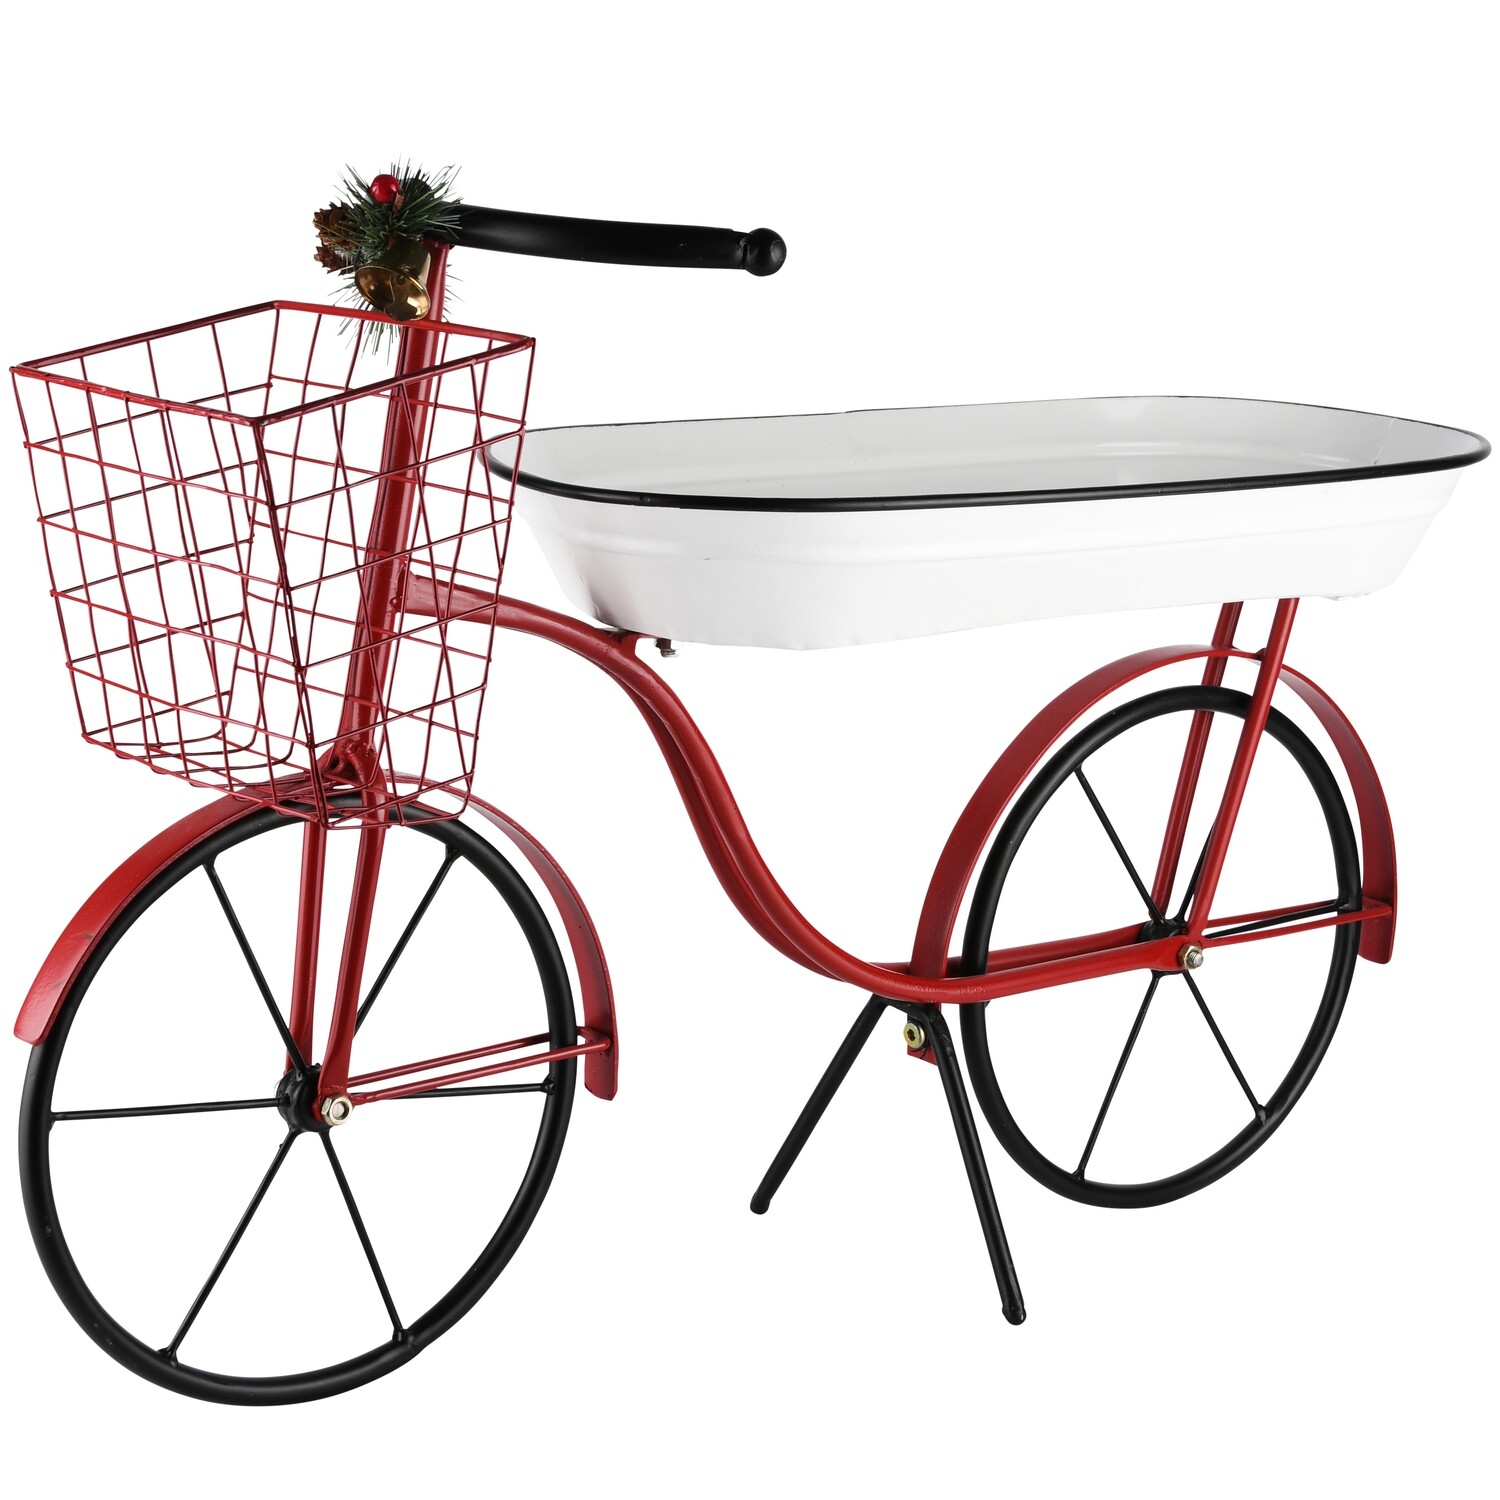 Deco fiets met bak wit/rood metaal